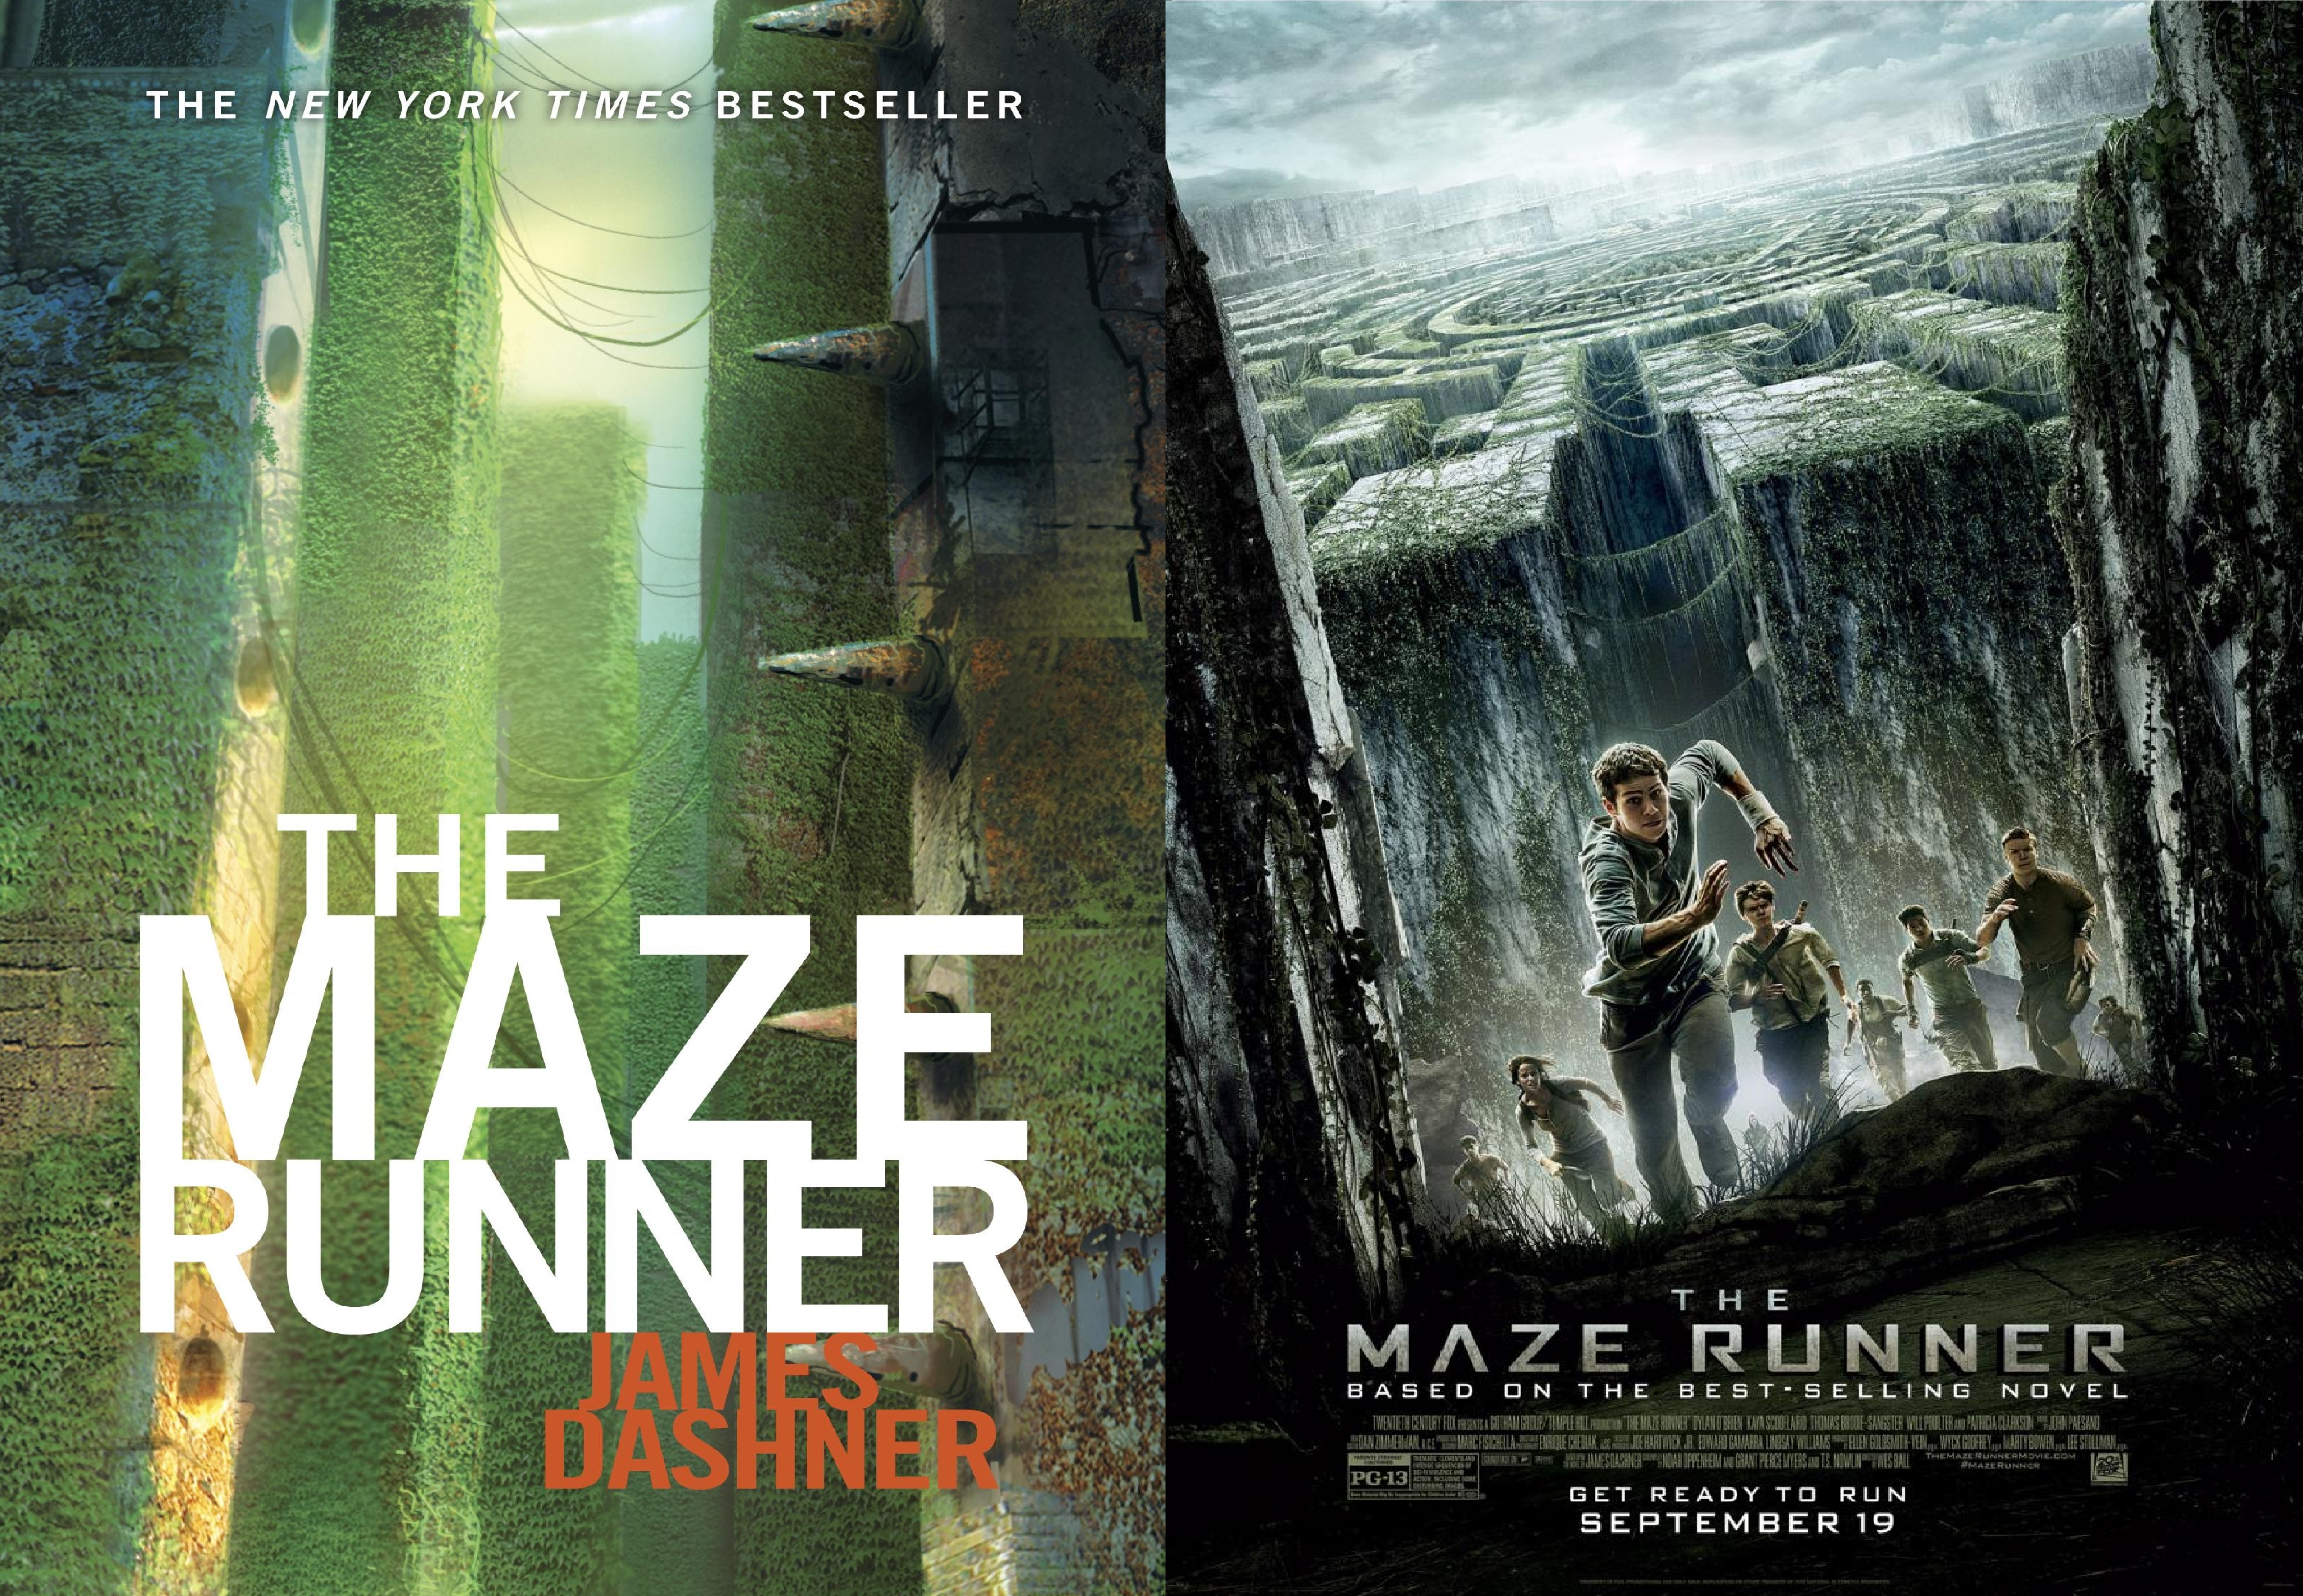 Автор книги бегущий. The Maze Runner книга. Dashner James "Maze Runner". The Maze Runner обложка. The Maze Runner 1 book.